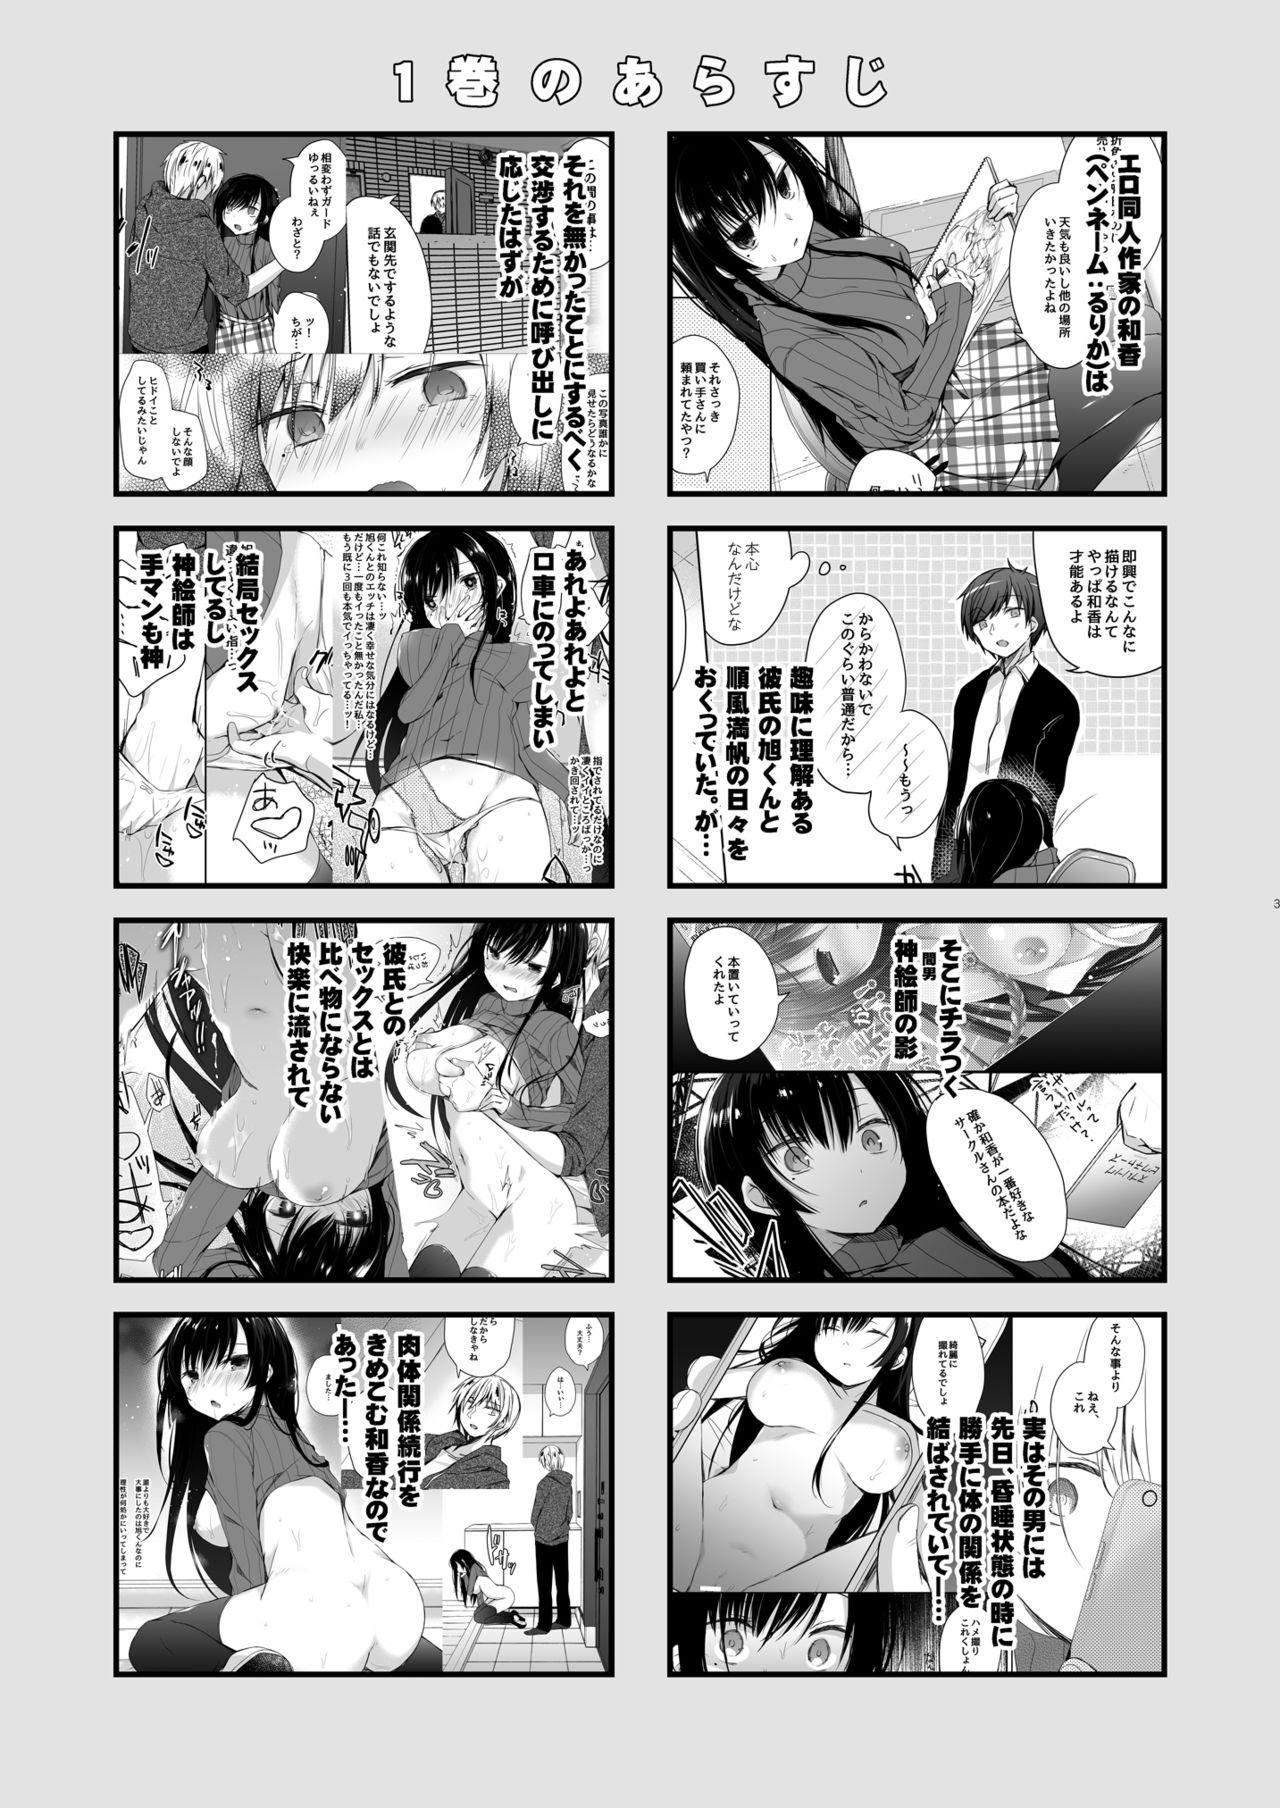 Humiliation Ero Doujin Sakka no Boku no Kanojo wa Uwaki nante Shinai. 5 - She will never let me down. - Original Atm - Page 5